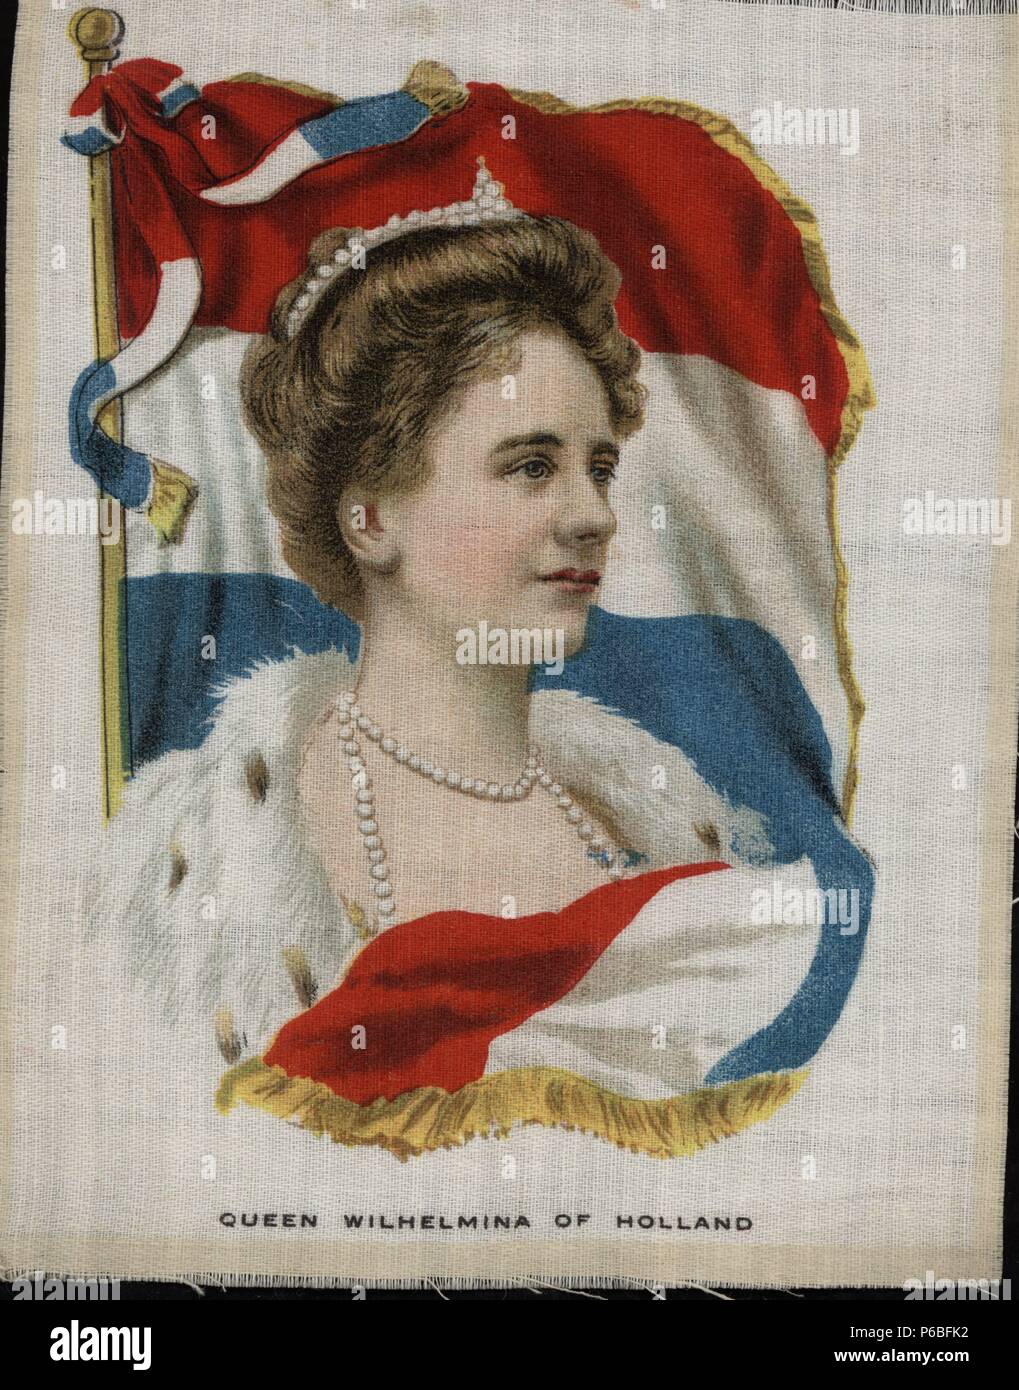 Guillermina de los Países Bajos (1880-1962), Reina de Holanda. Retrato y bandera impresos sobre tela. Años 1920. Foto de stock